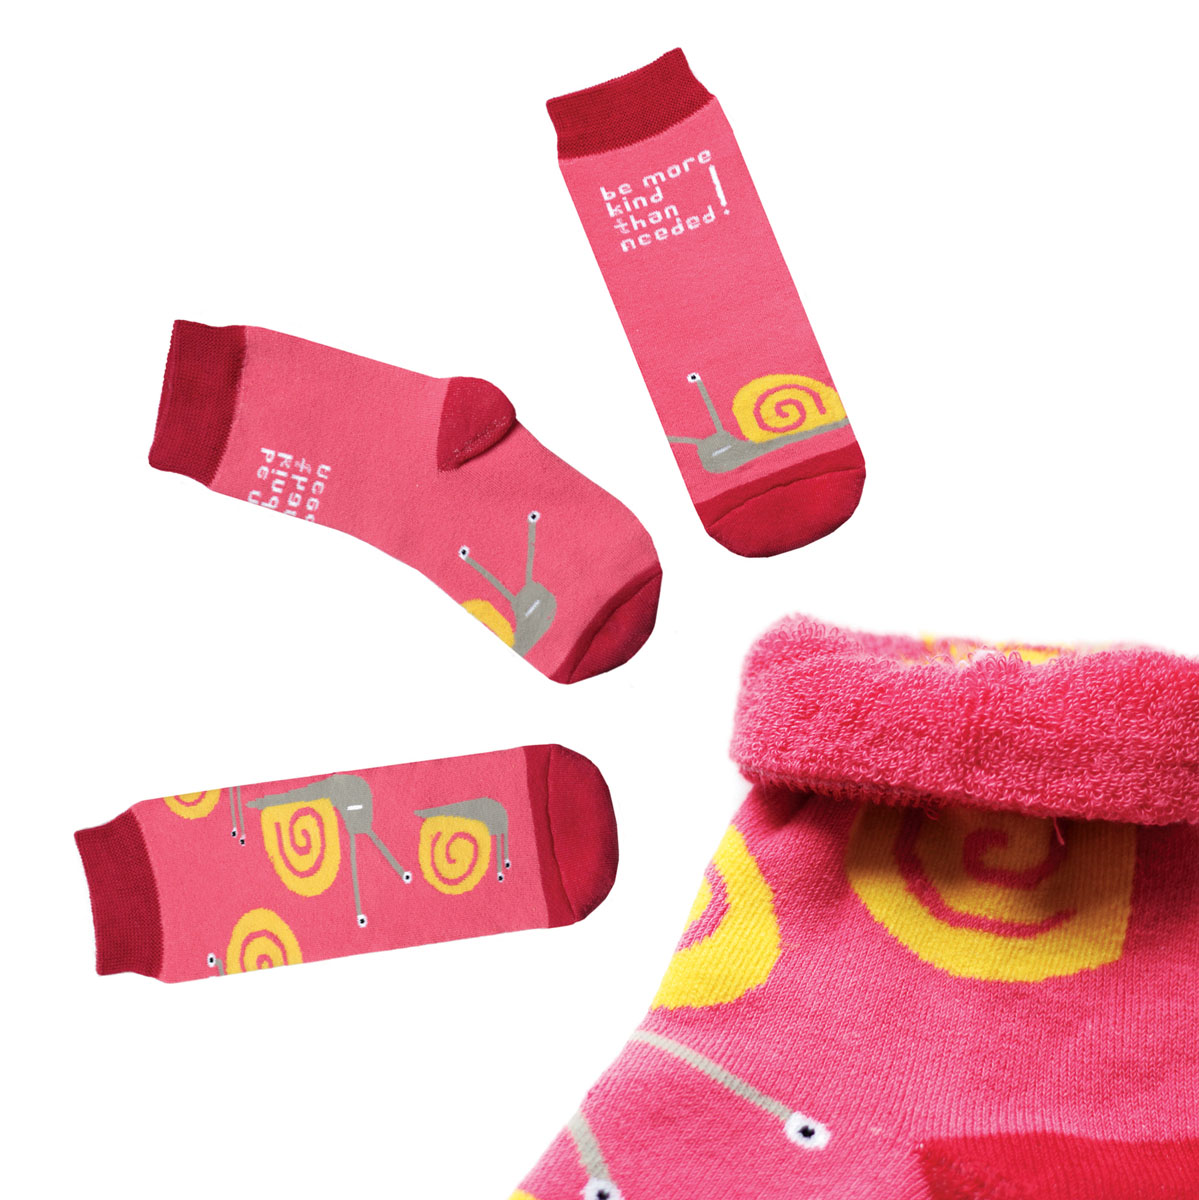 Носки женские Big Bang Socks Улитка, махровые, цвет: коралловый, красный. a163. Размер 35/39